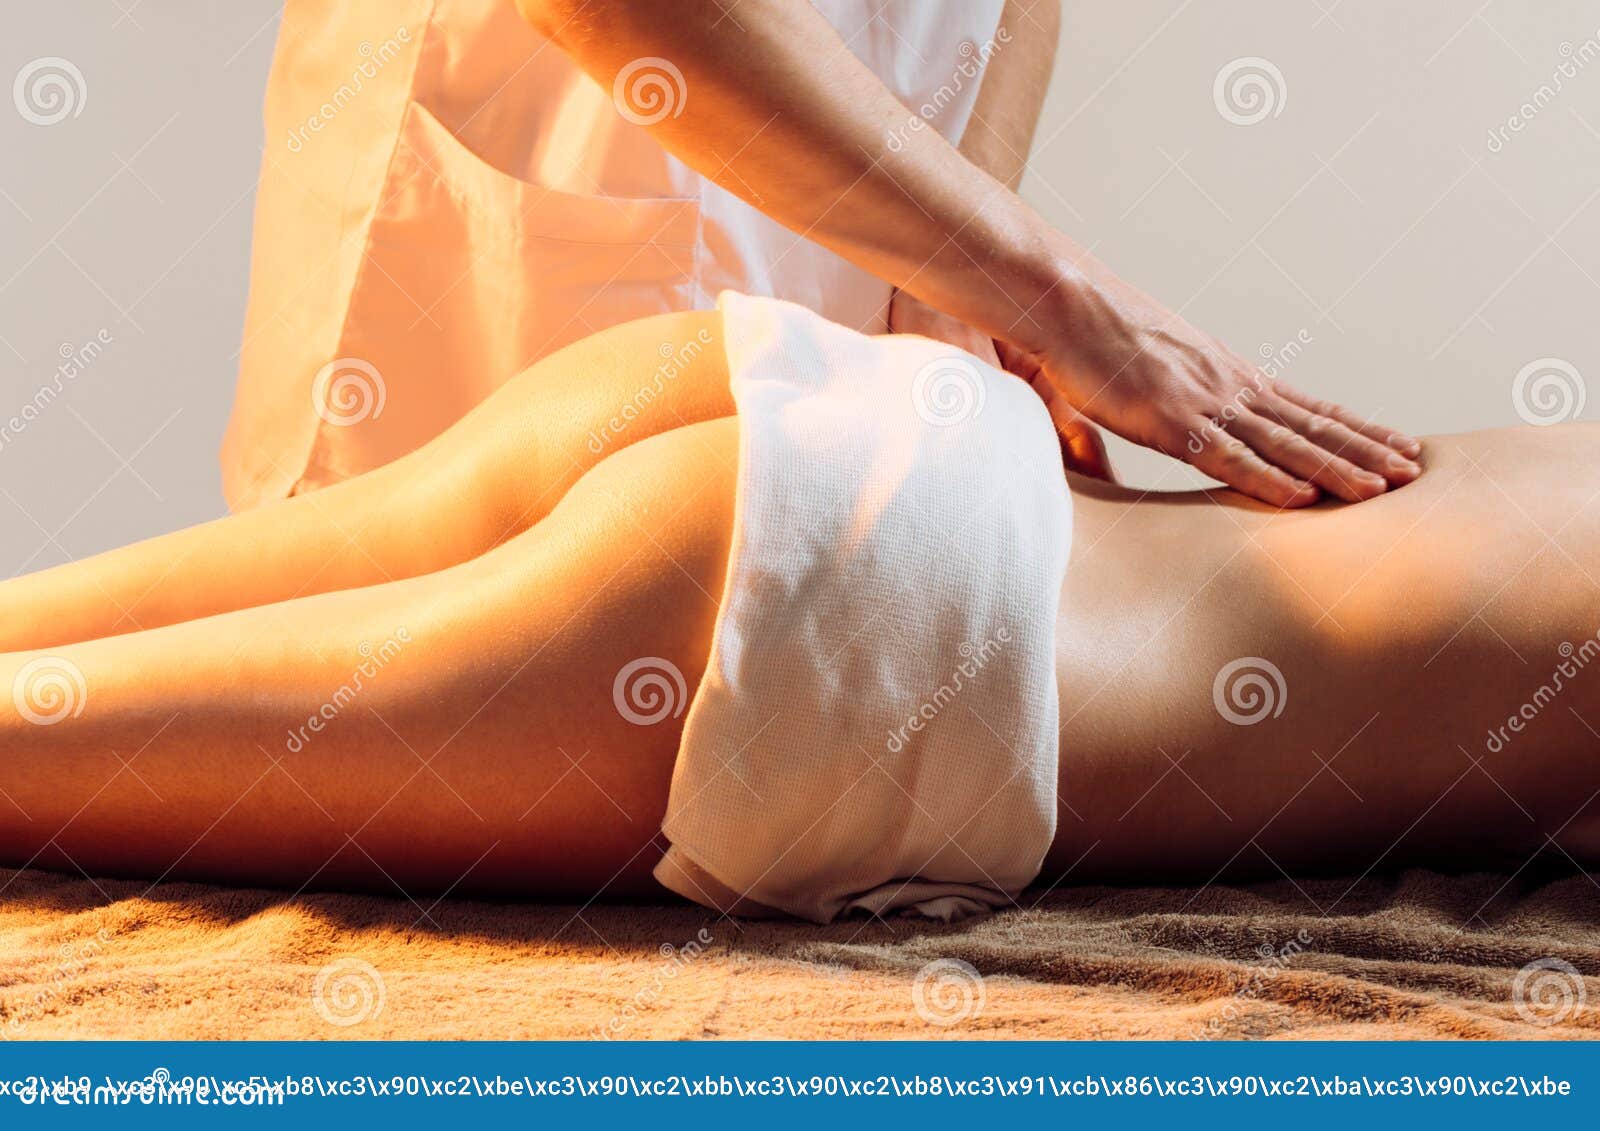 carlos r quinones recommends hot girl massage com pic